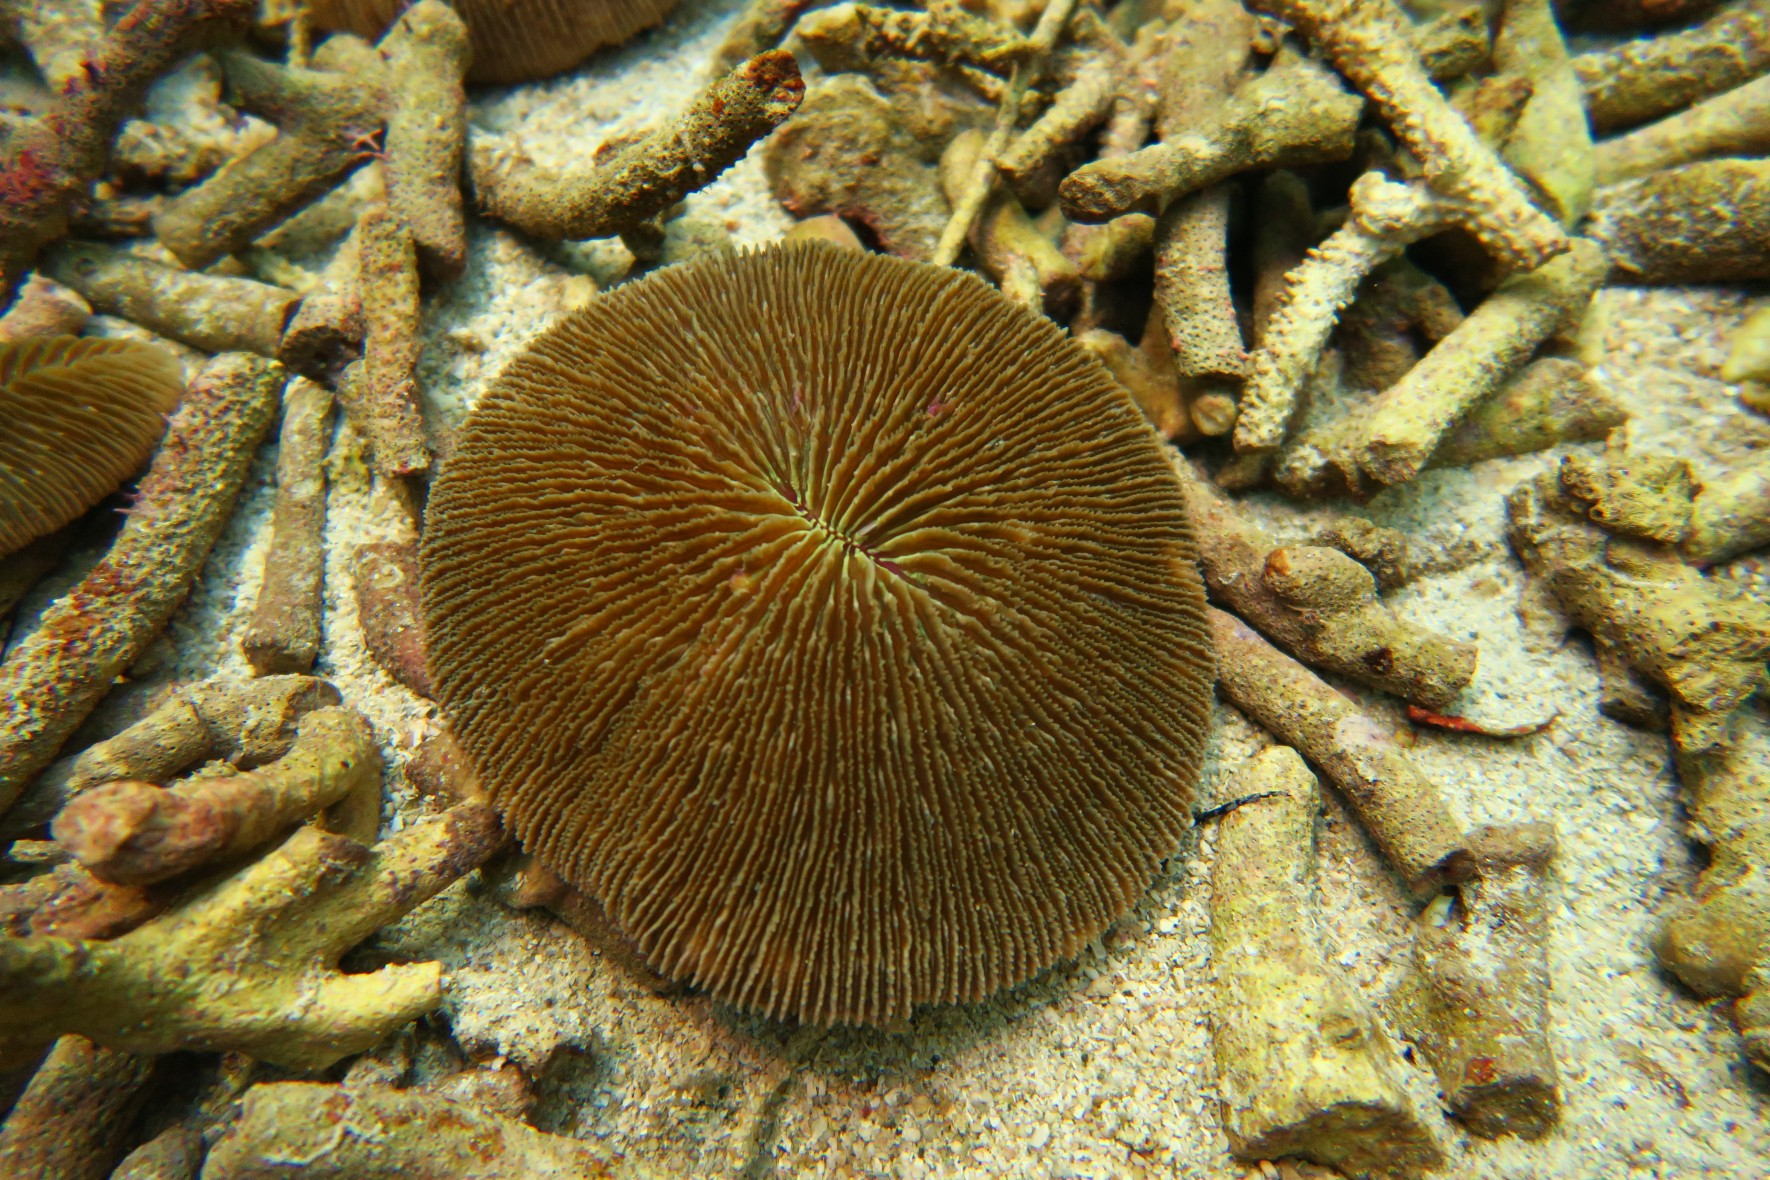 Frisbee mushroom coral　/　oval mushroom coral 